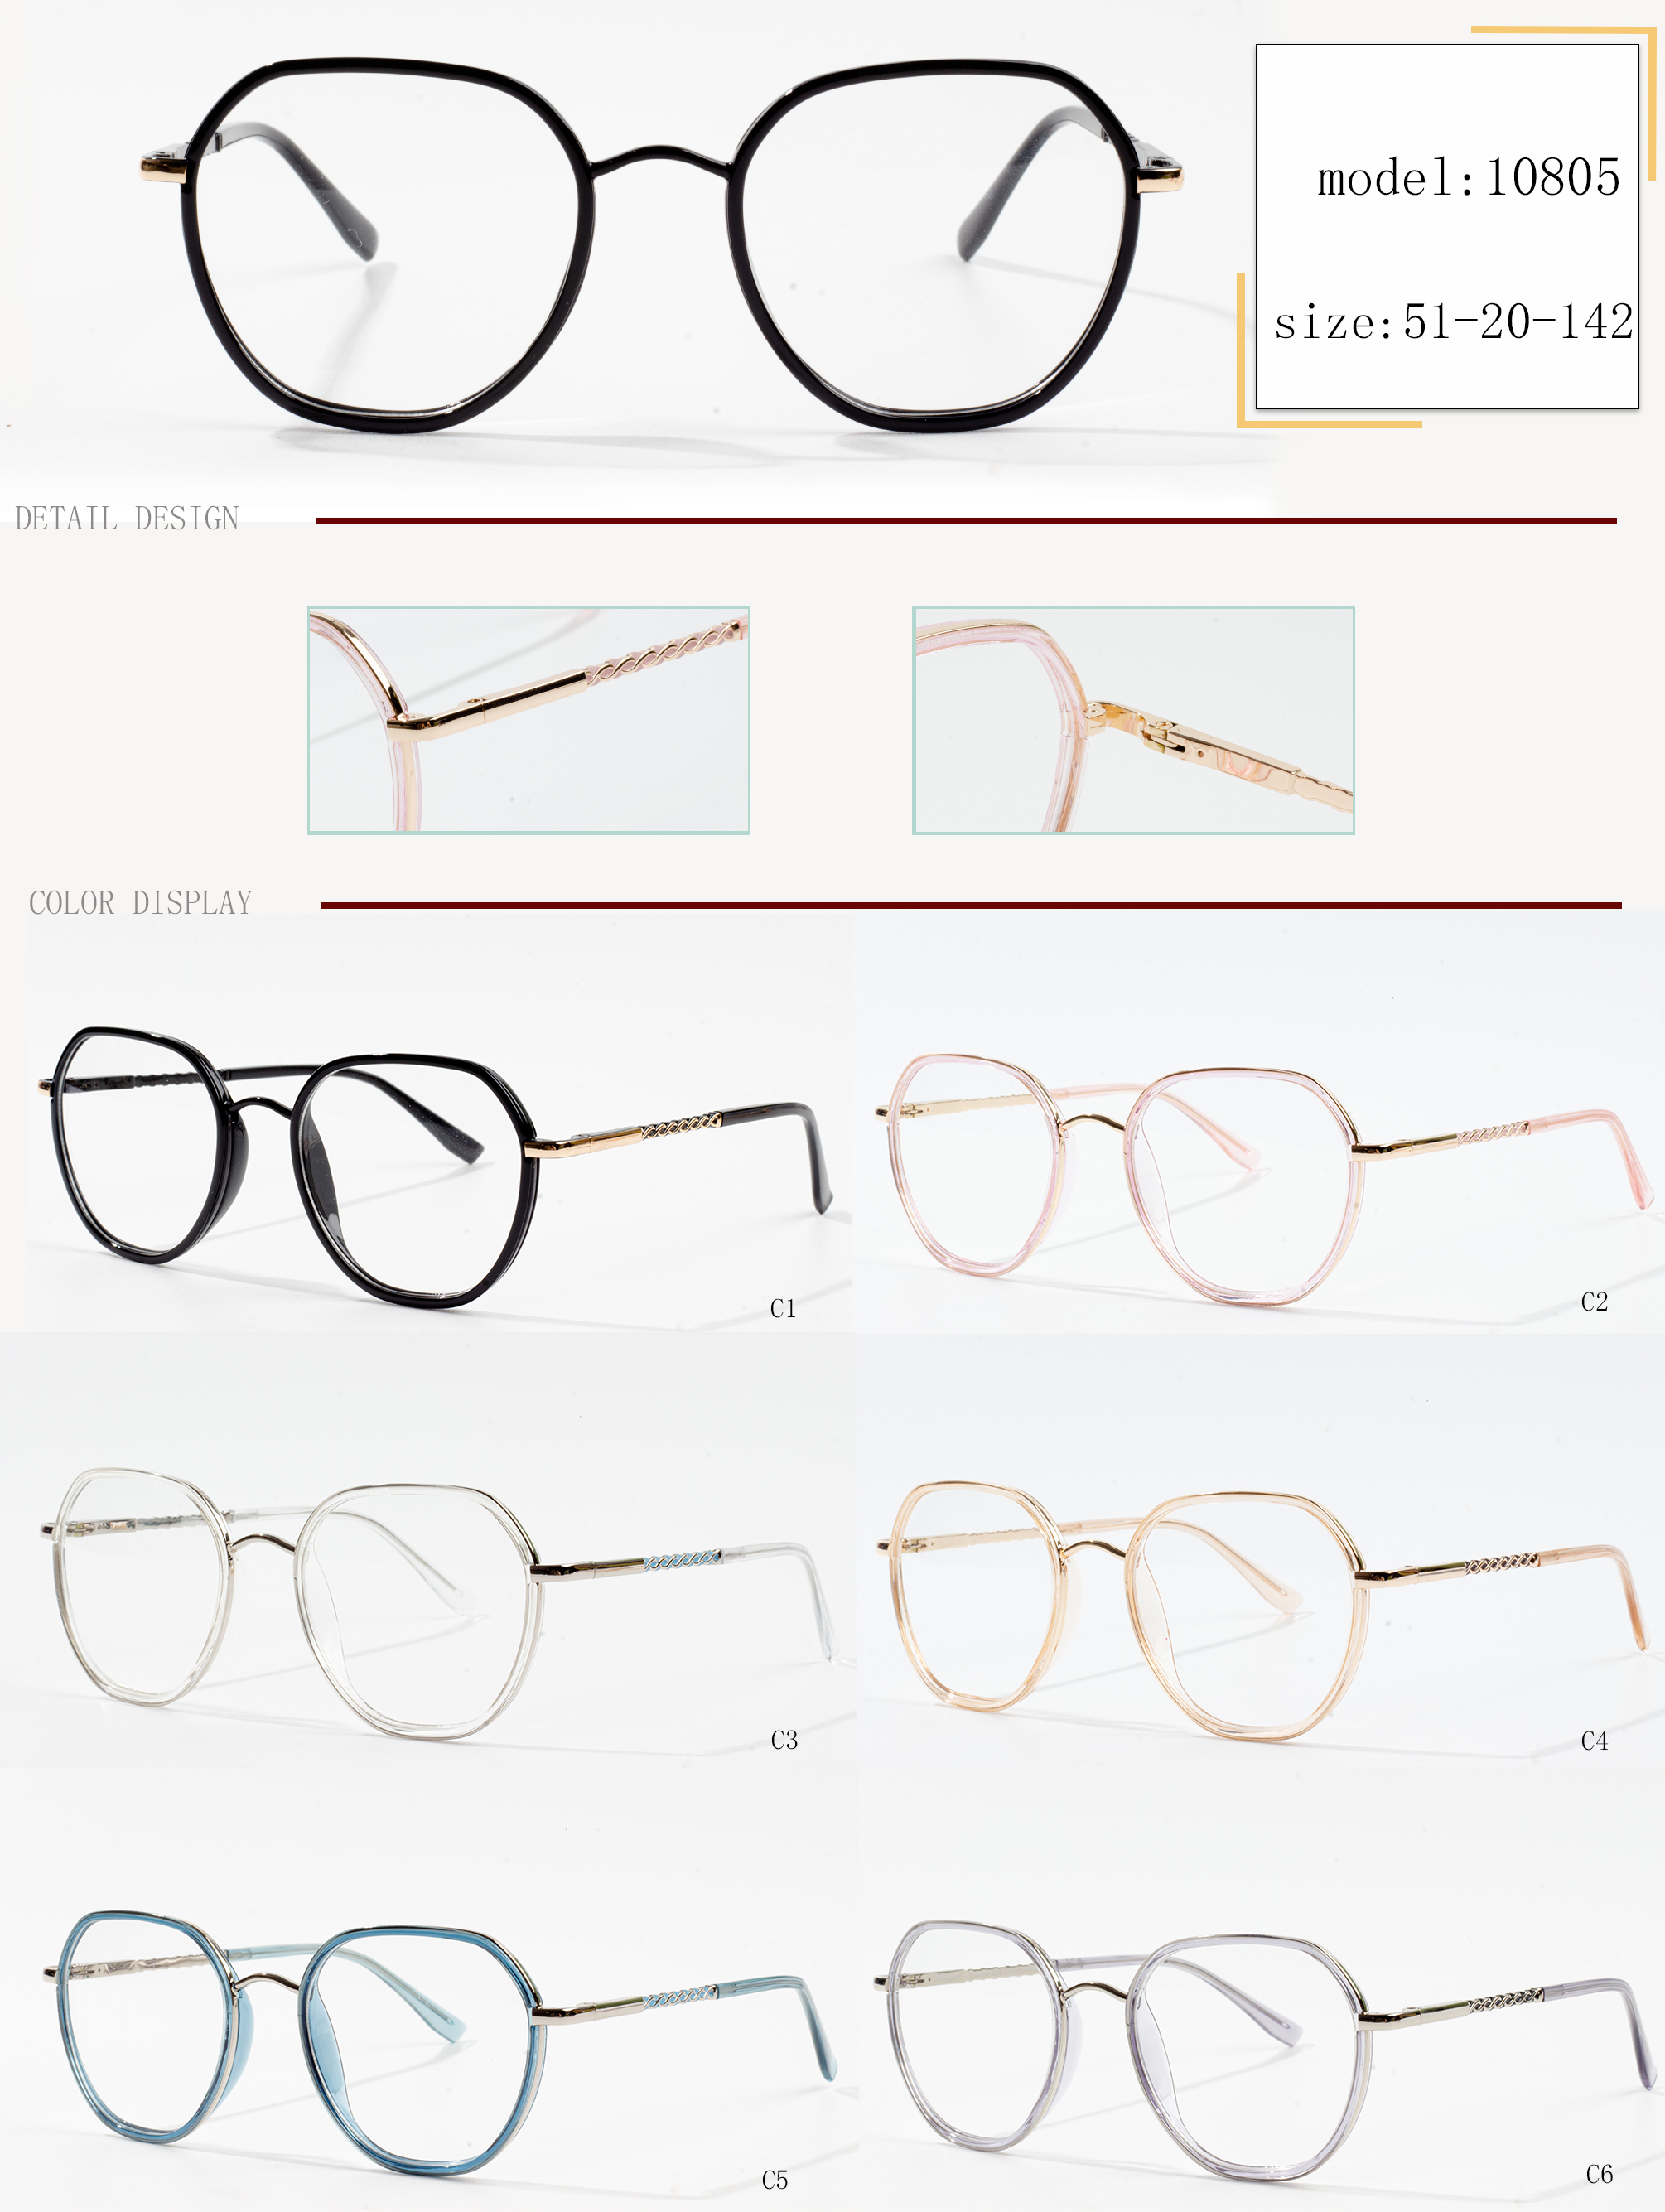 فریم های مختلف عینک